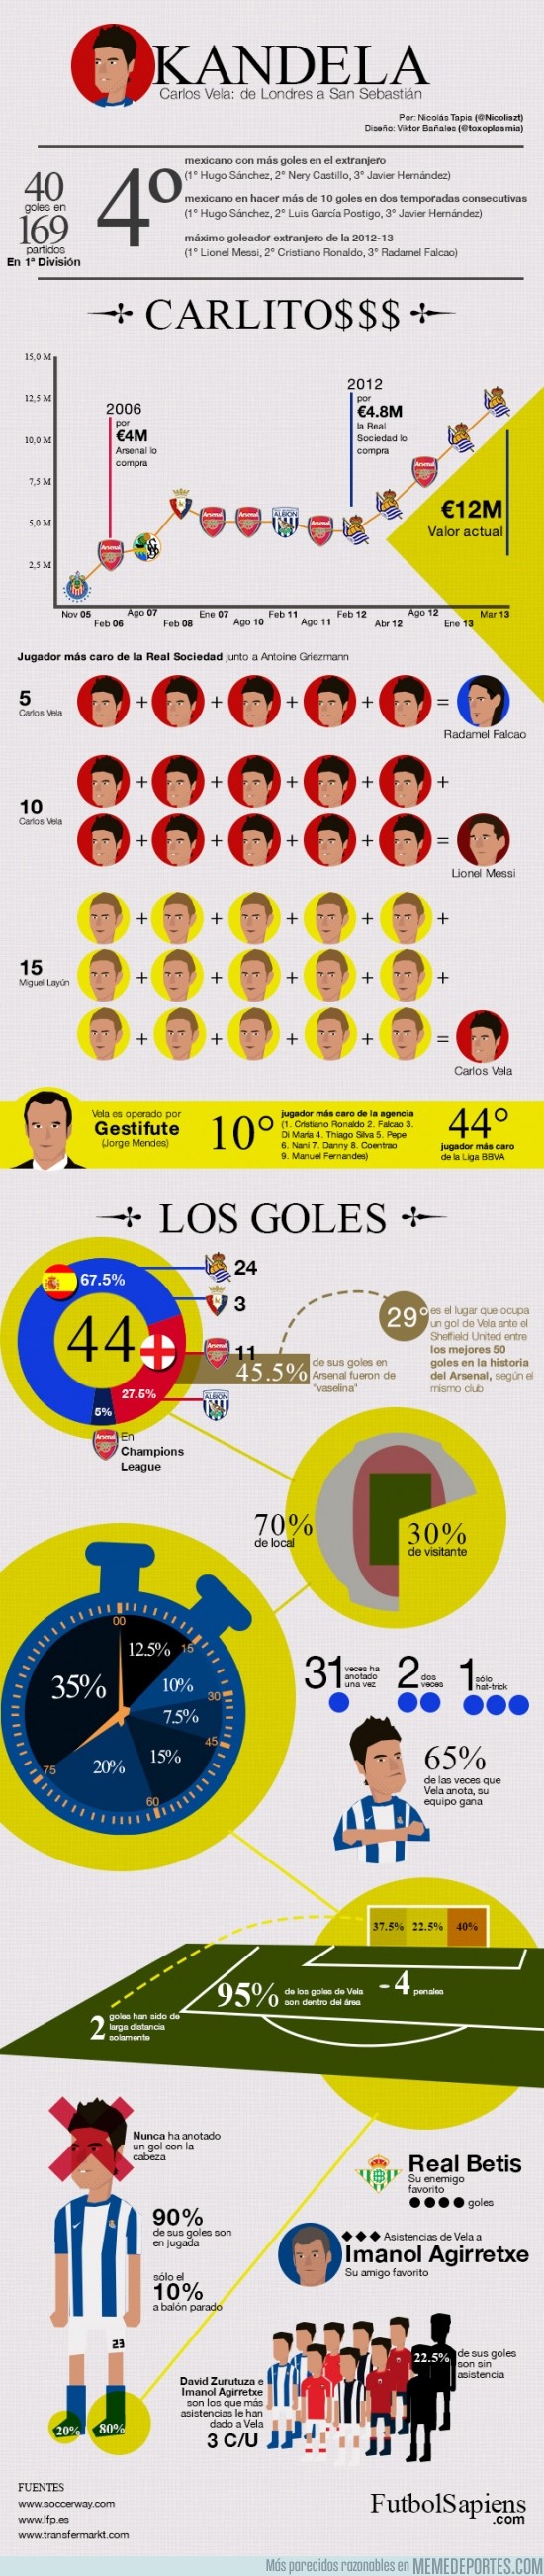 103397 - Infografía de Carlos Vela